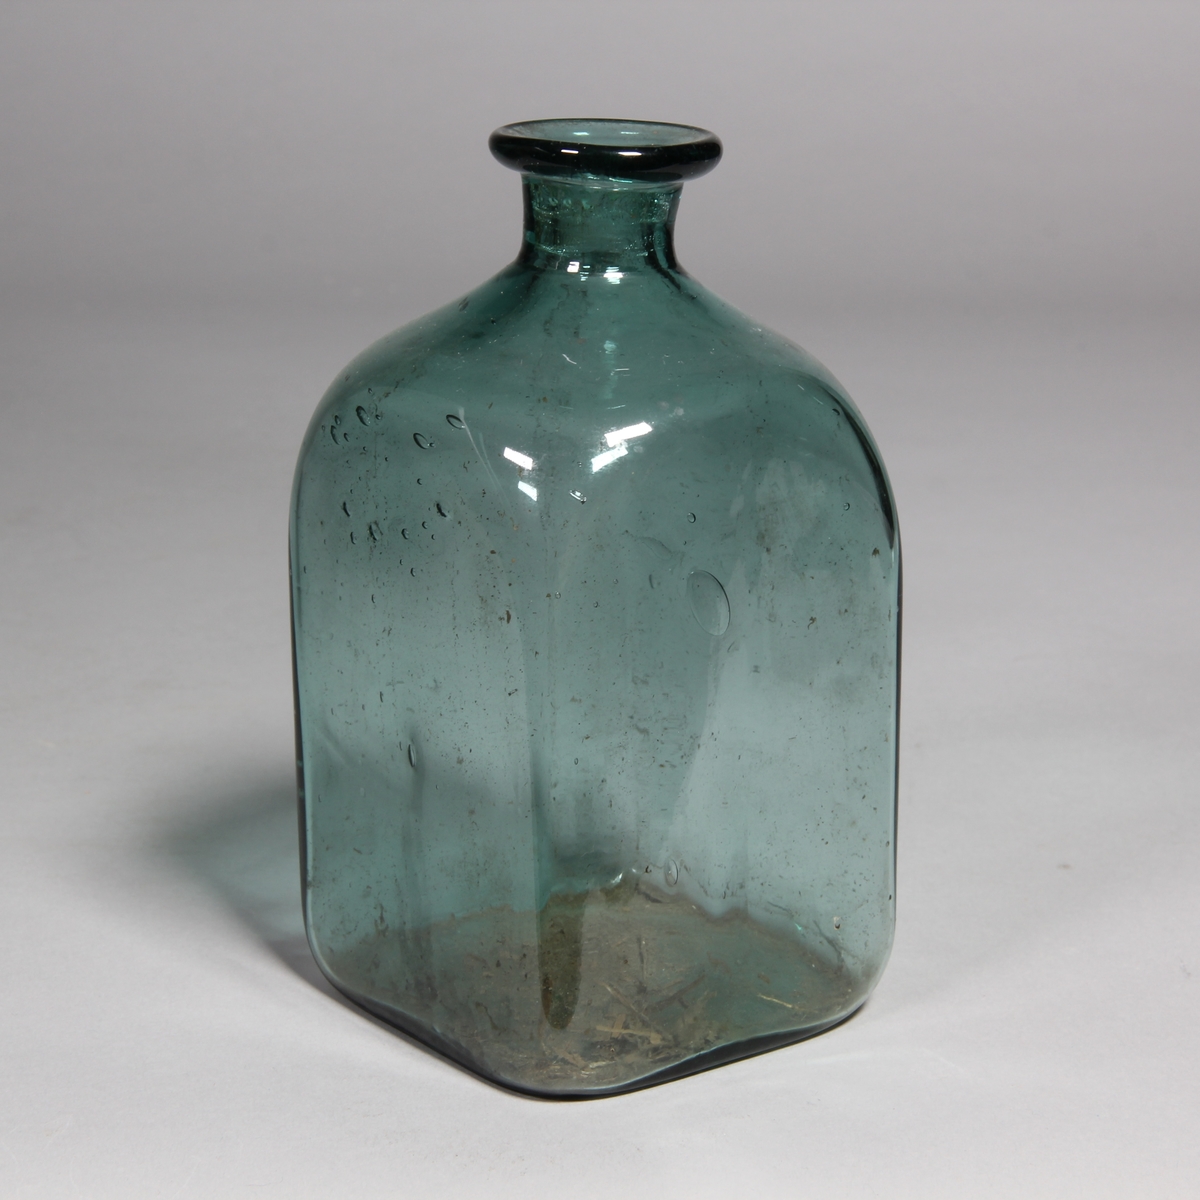 Flaska av grönt glas, kvadratisk med utvikt mynning.